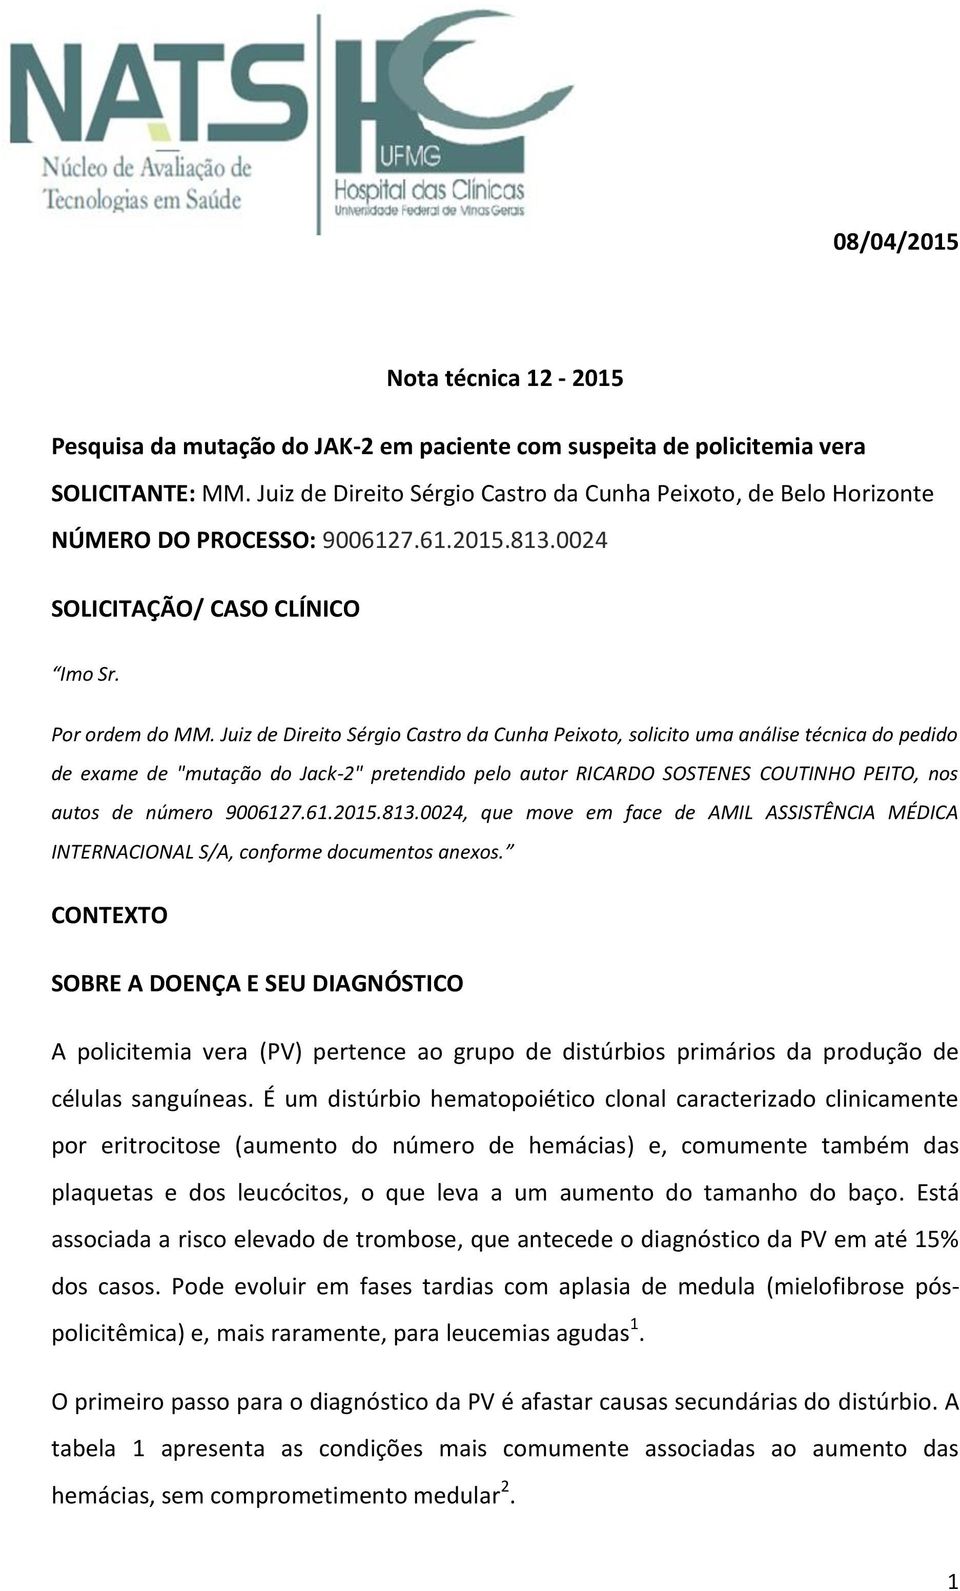 Juiz de Direito Sérgio Castro da Cunha Peixoto, solicito uma análise técnica do pedido de exame de "mutação do Jack2" pretendido pelo autor RICARDO SOSTENES COUTINHO PEITO, nos autos de número